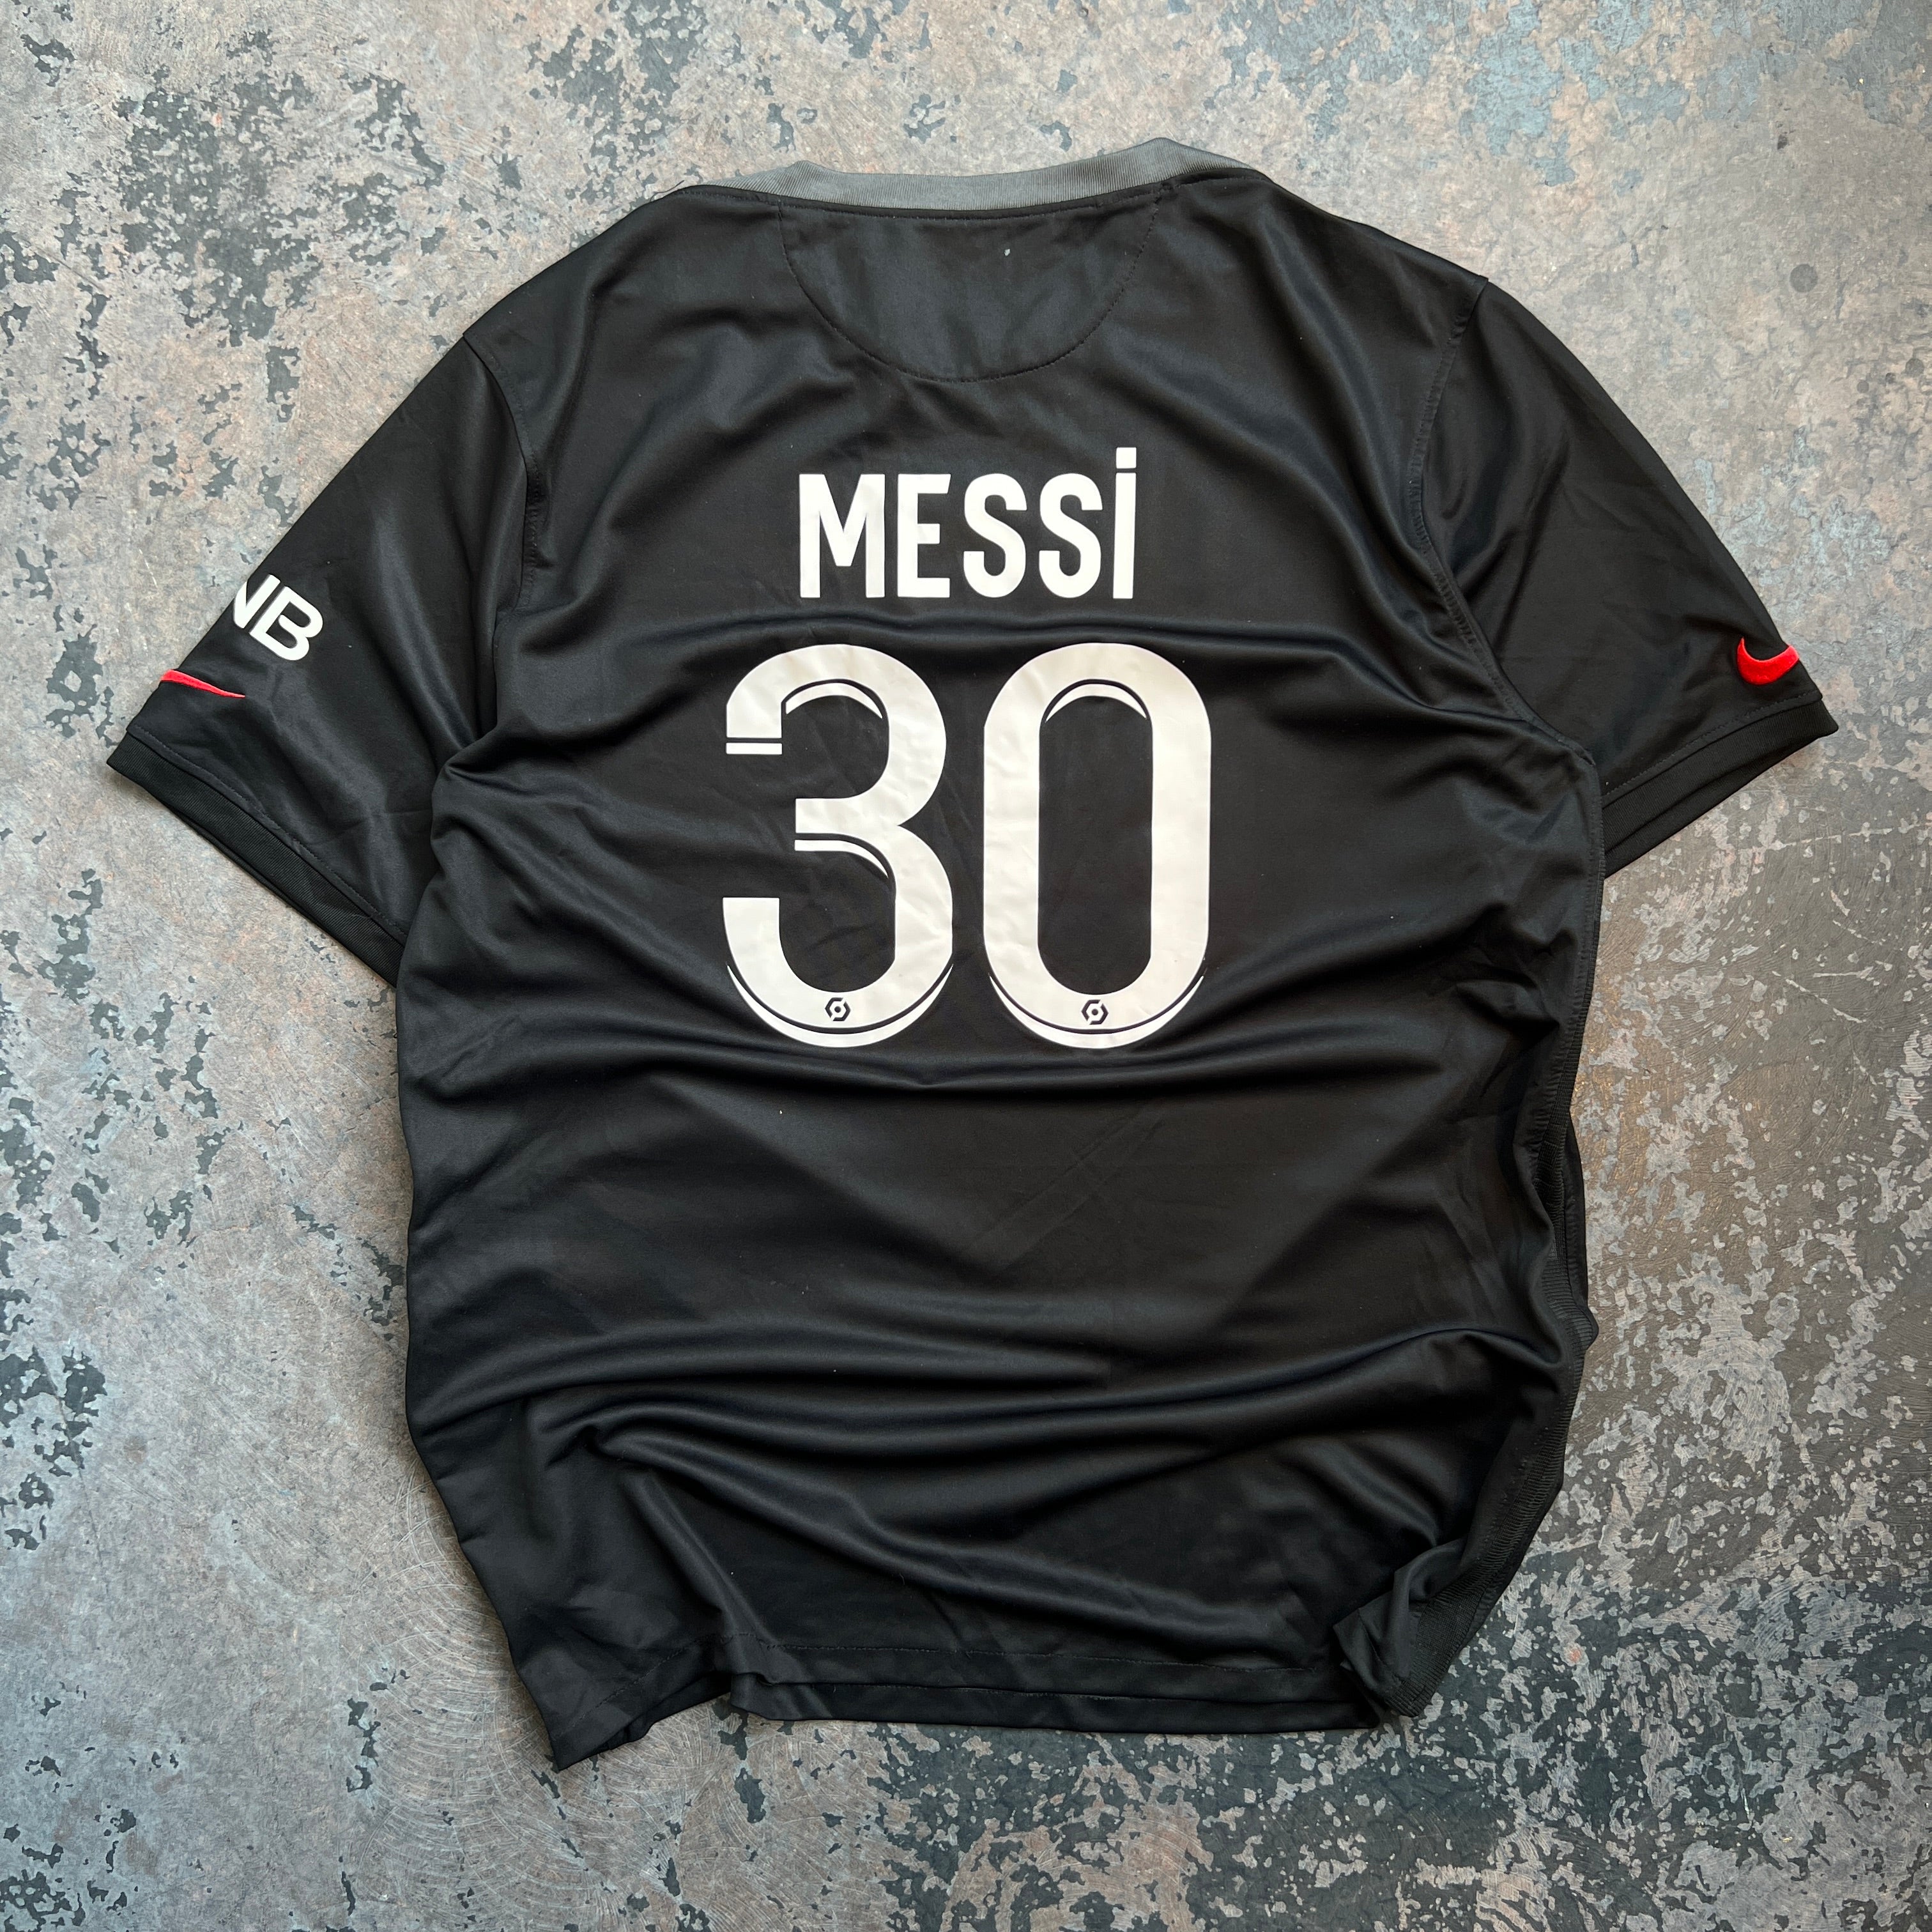 Nike Messi Paris Soccer Jersey